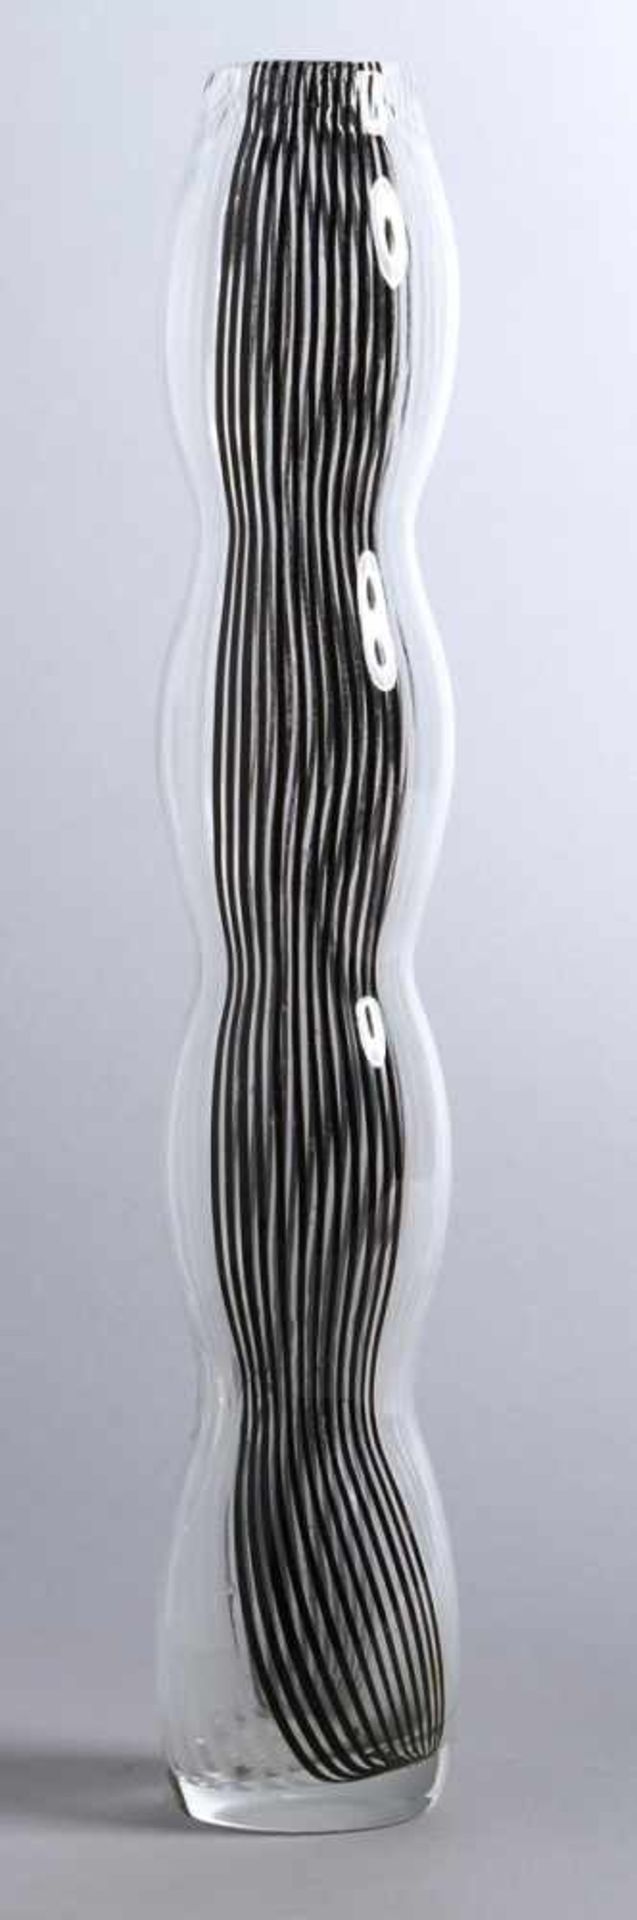 Glas-Ziervase, Murano, 60er Jahre, runder Stand, schlanker, 3-fach eingeschnürter Korpusmit